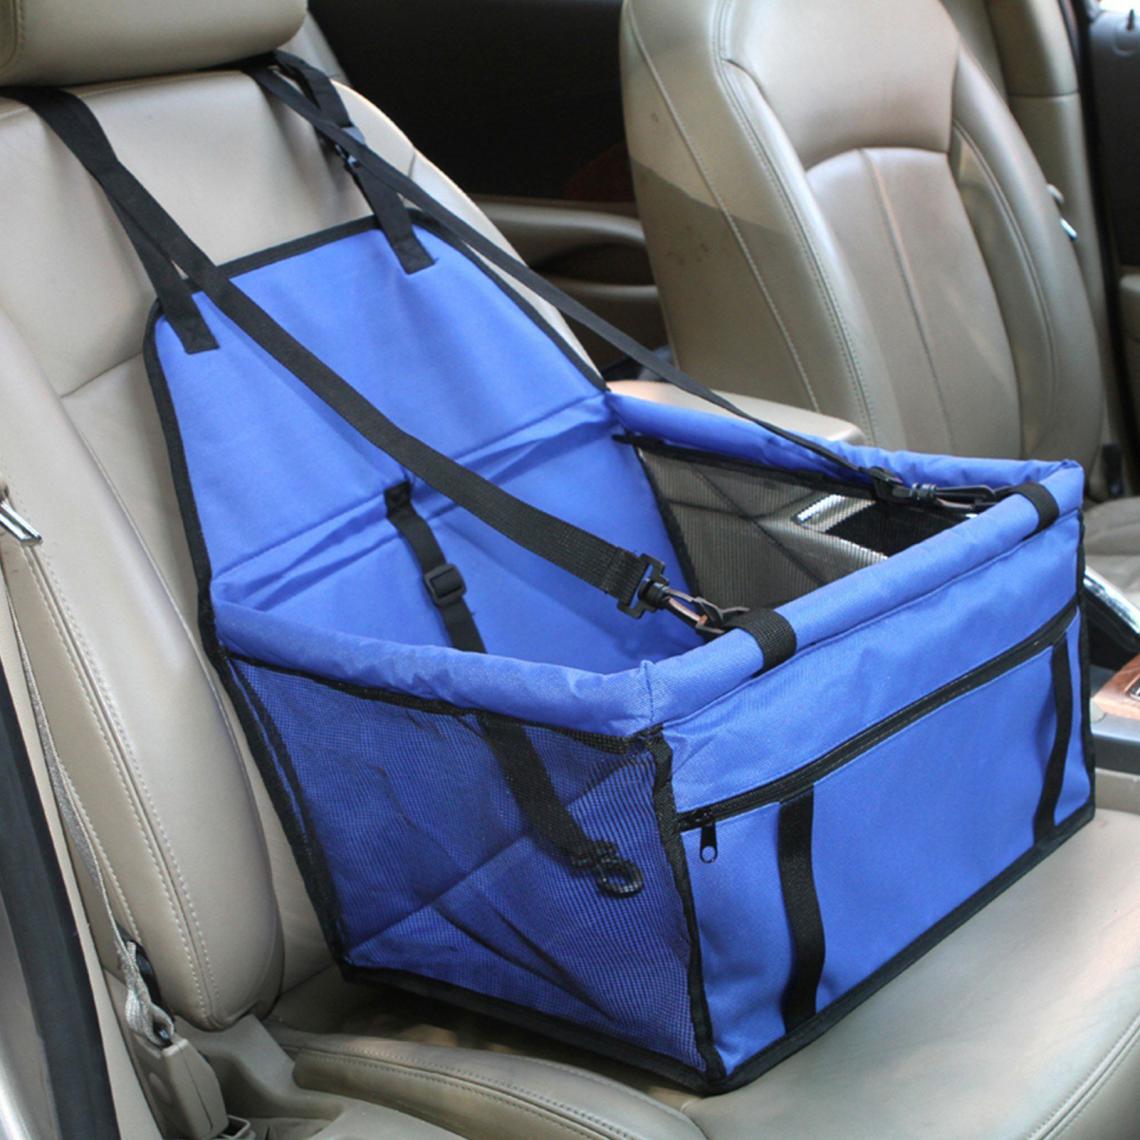 Justgreenbox - Rehausseur de siège d'auto pour chien avec ceinture de sécurité, Rouge, S - Equipement de transport pour chat